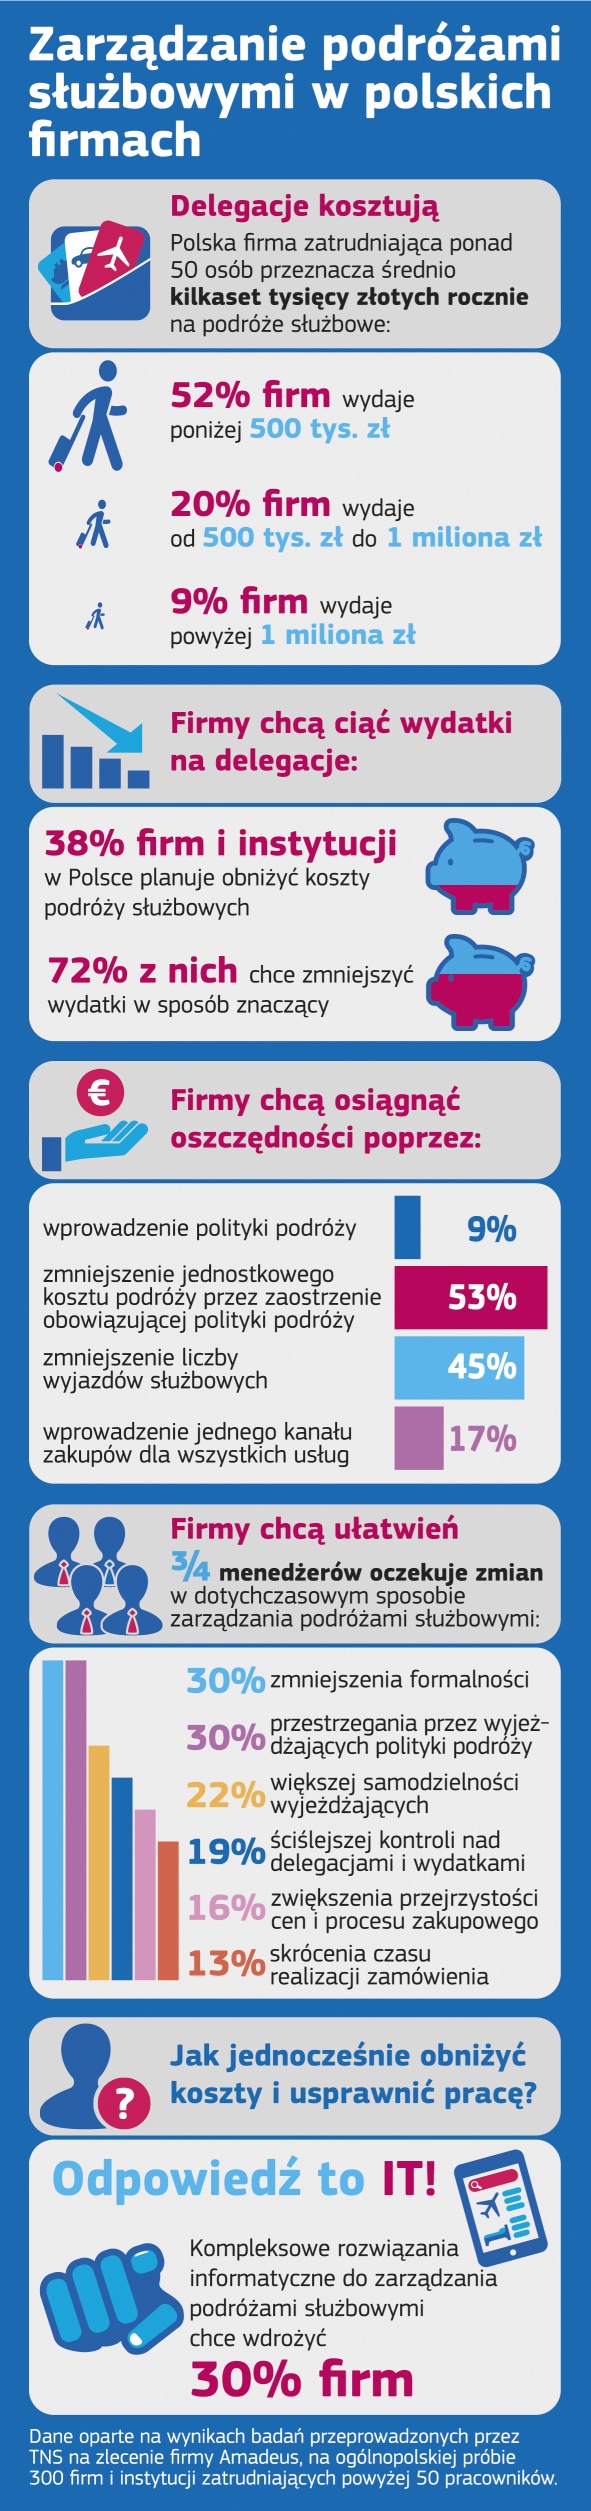 Zarządzanie podróżami służbowymi w polskich firmach - infog